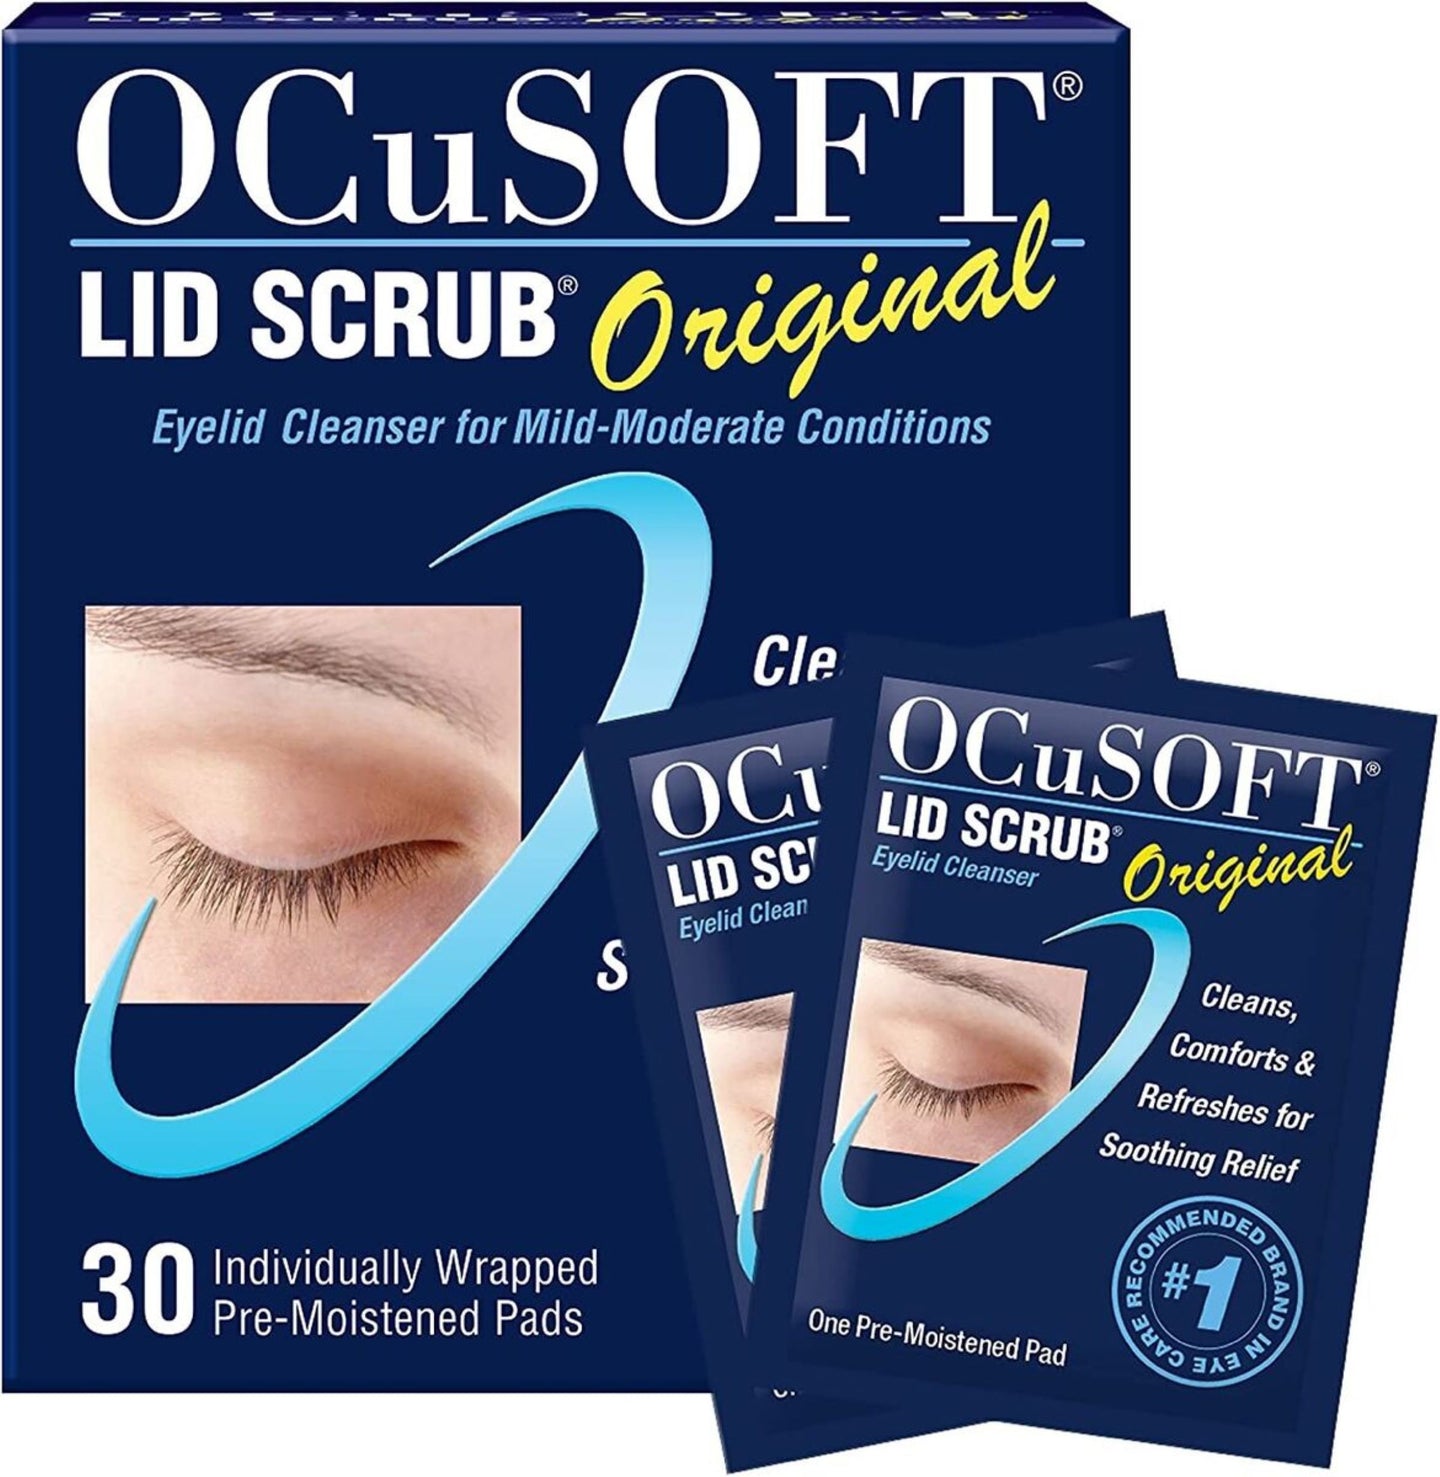 OCuSOFT Original Lid Scrub Pre-Moistened Pads